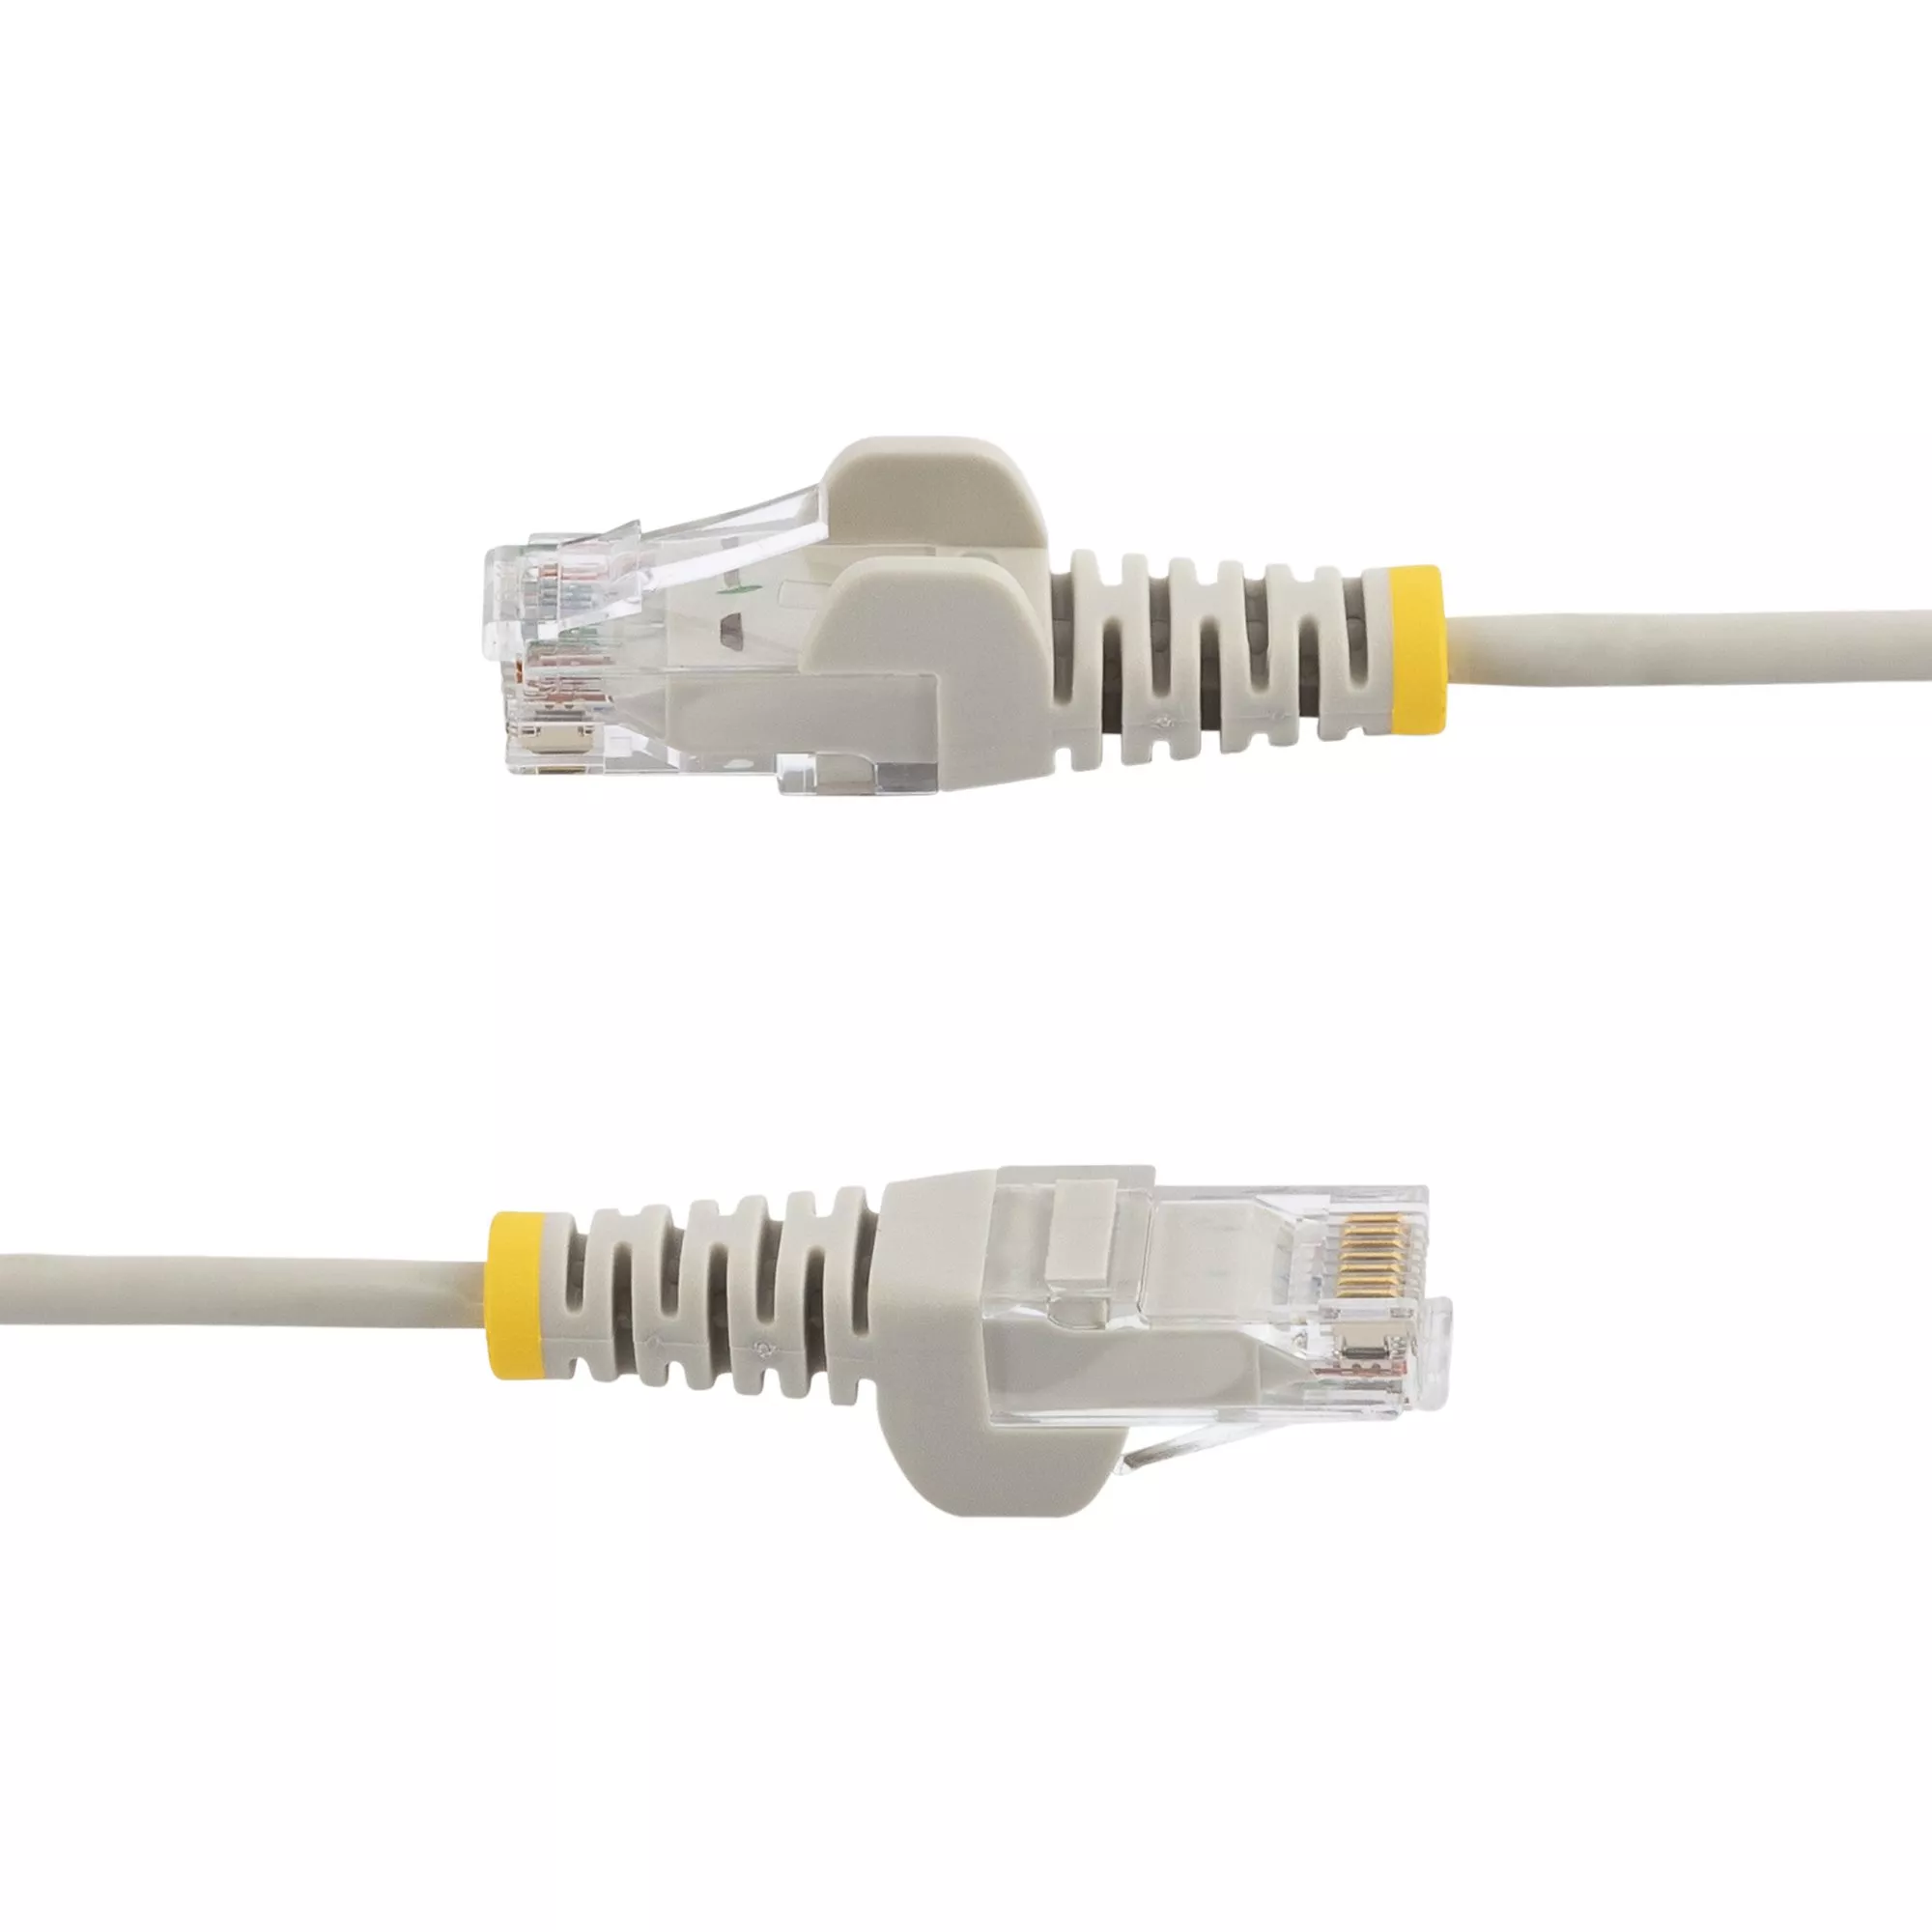 Achat StarTech.com Câble réseau Ethernet RJ45 Cat6 de 1,5 sur hello RSE - visuel 3